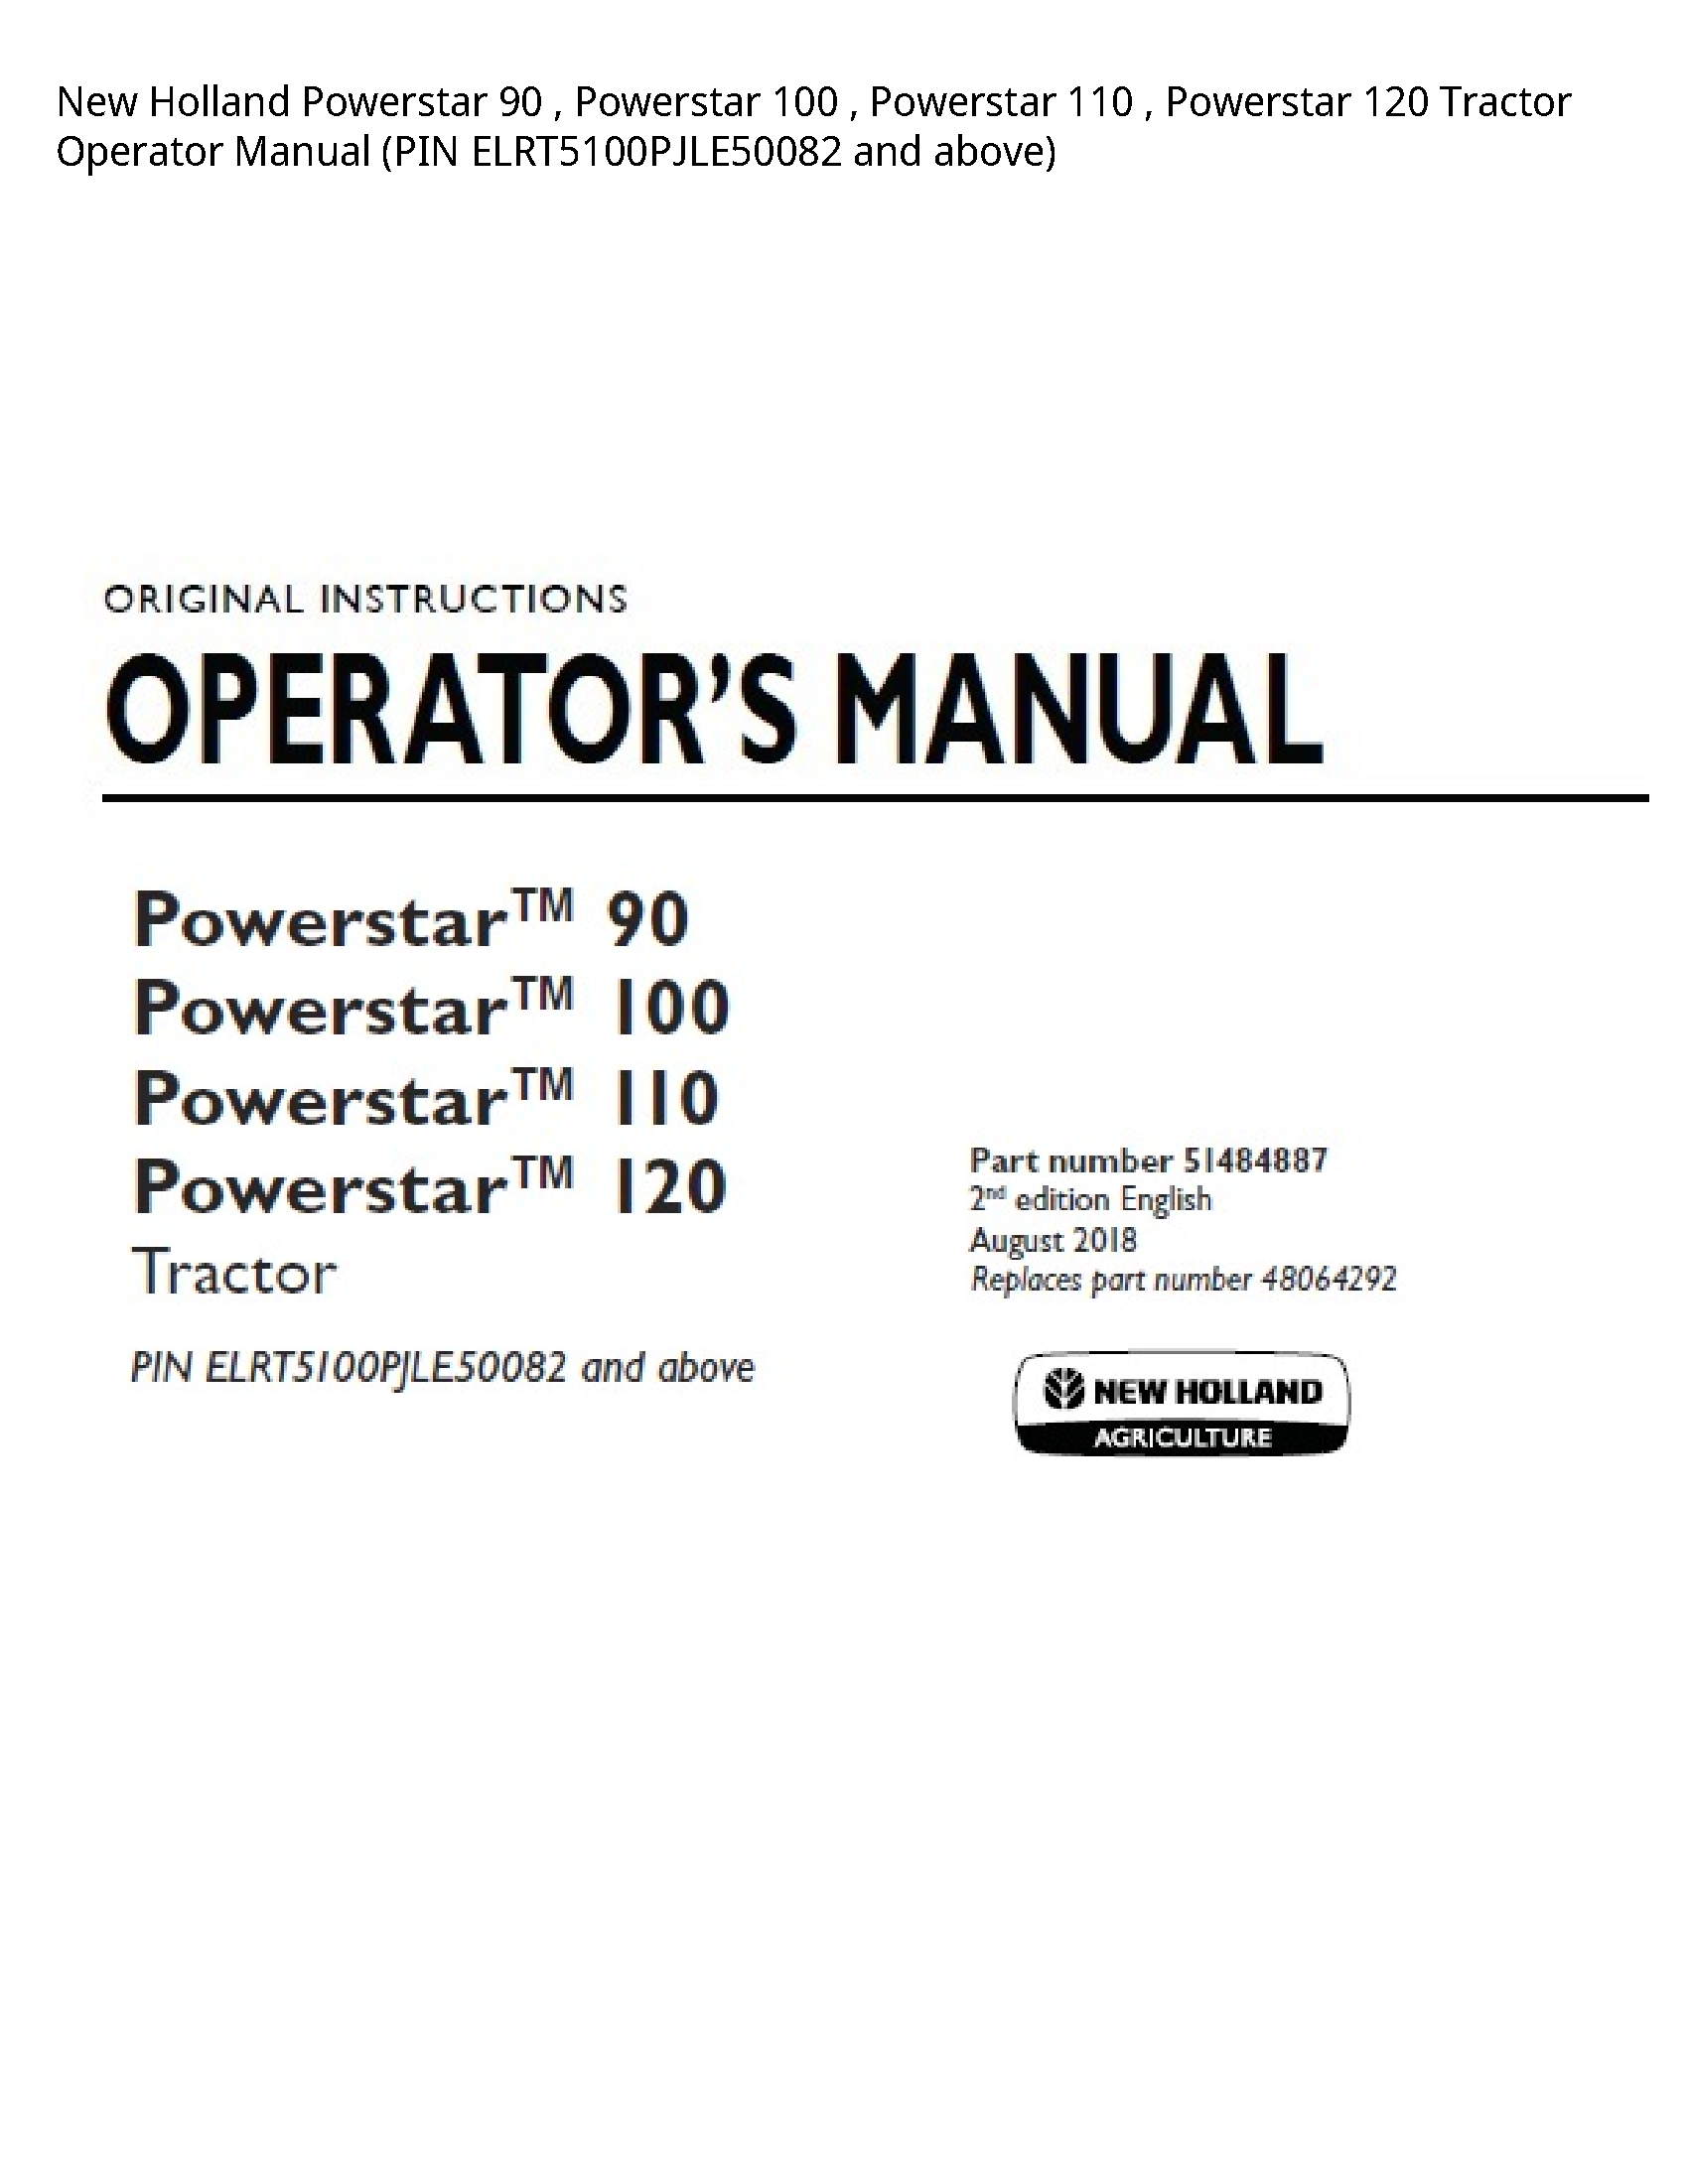 New Holland 90 Powerstar Powerstar Powerstar Powerstar Tractor Operator manual